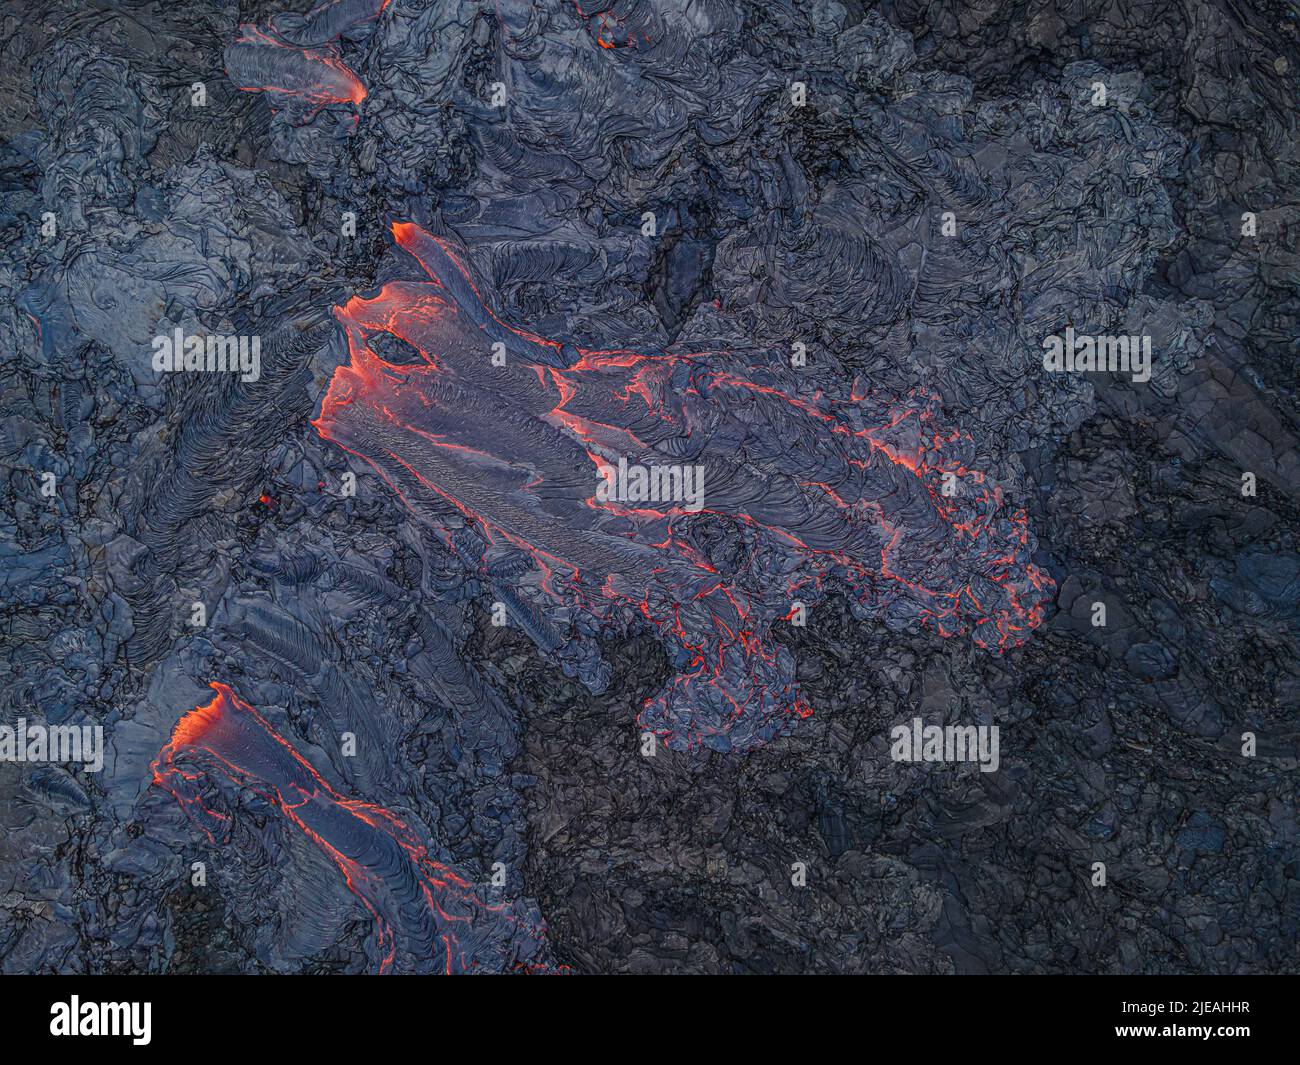 Flusso di lava dall'alto. La magma calda rossa scorre da un vulcano attivo sulla penisola islandese di Reykjanes. Strutture nella roccia blu-nera. Magm raffreddato scuro Foto Stock